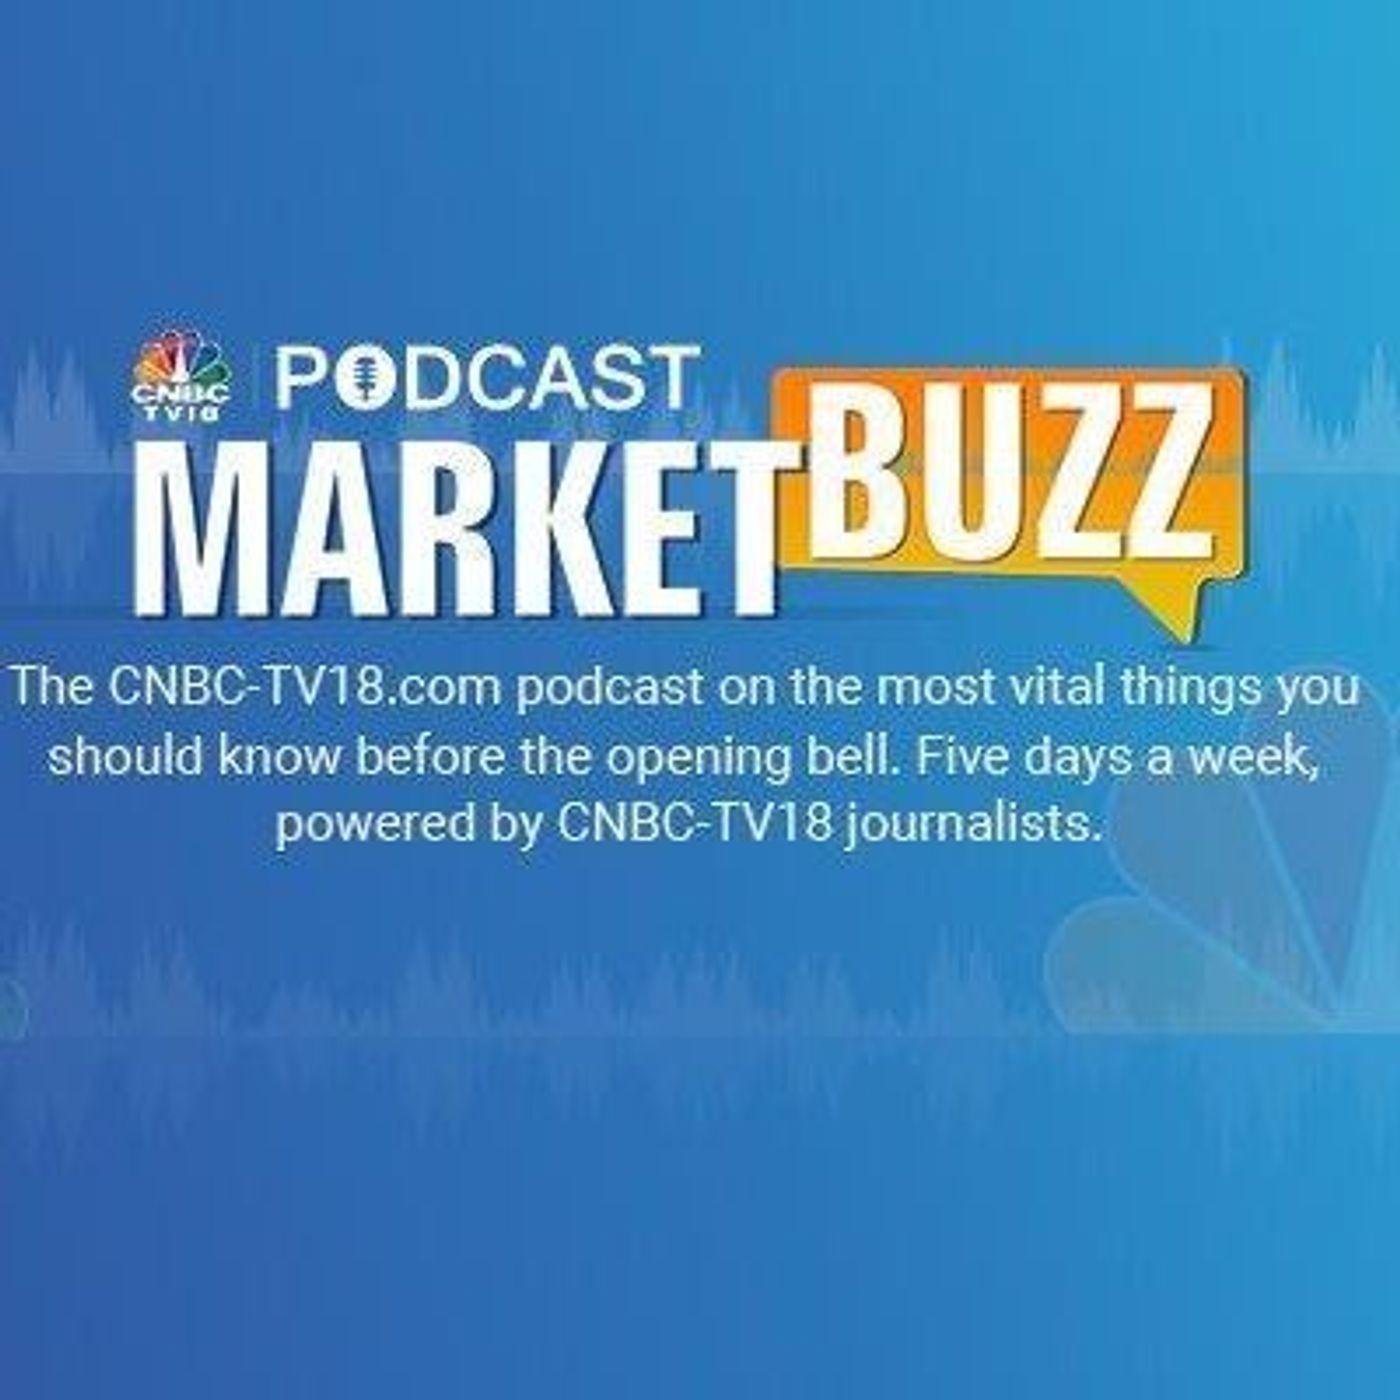 1239: Marketbuzz Podcast with Kanishka Sarkar: Sensex, Nifty 50 likely to open lower, Kotak Mahindra Bank in focus